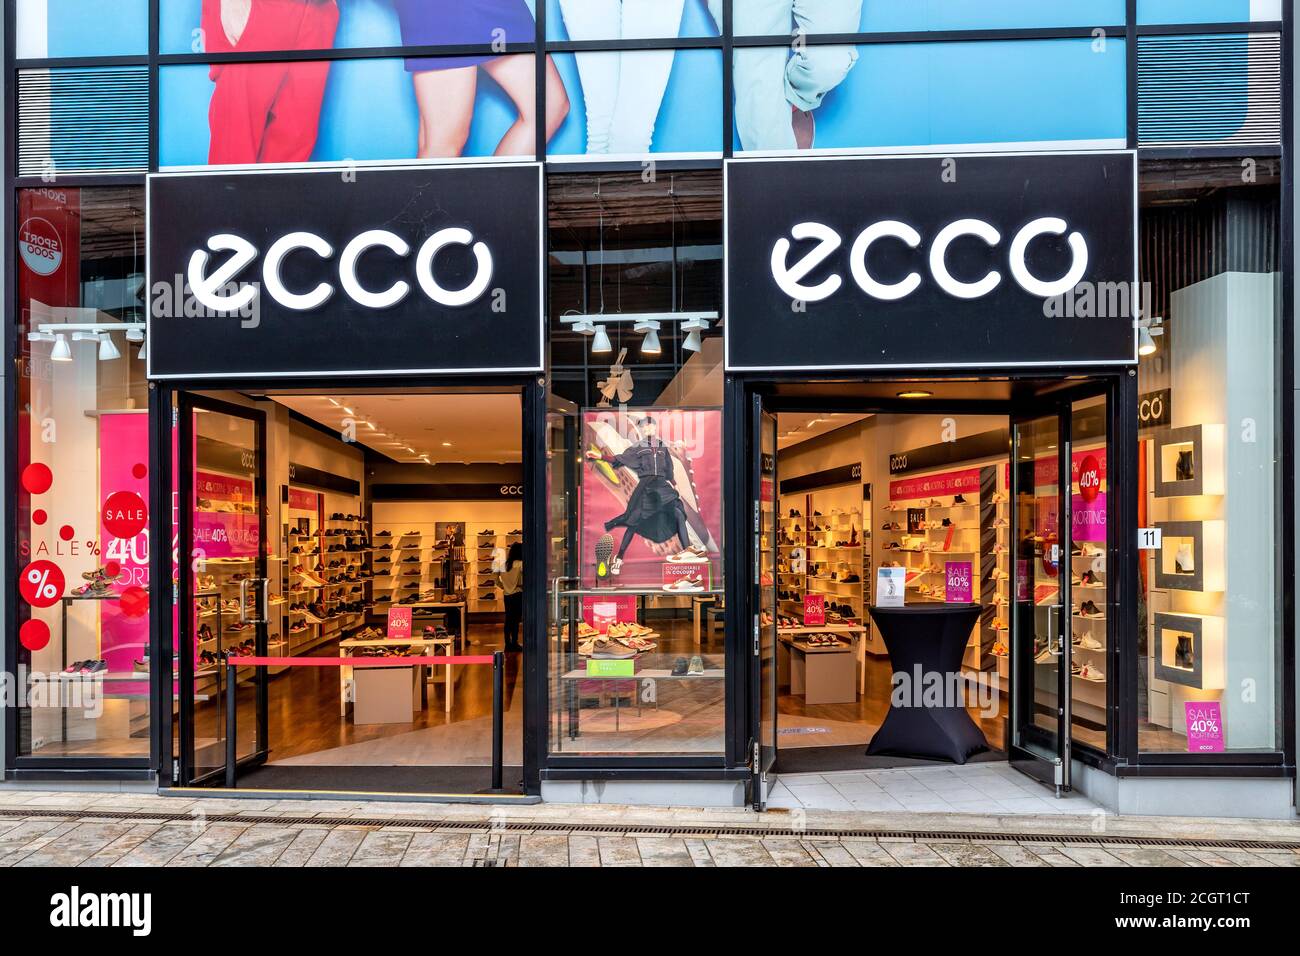 ECCO en Almere, países Bajos. ECCO Sko A/S es un fabricante y minorista danés de calzado fundado en 1963 por Karl Toosbuy en Bredebro, Fotografía de Alamy